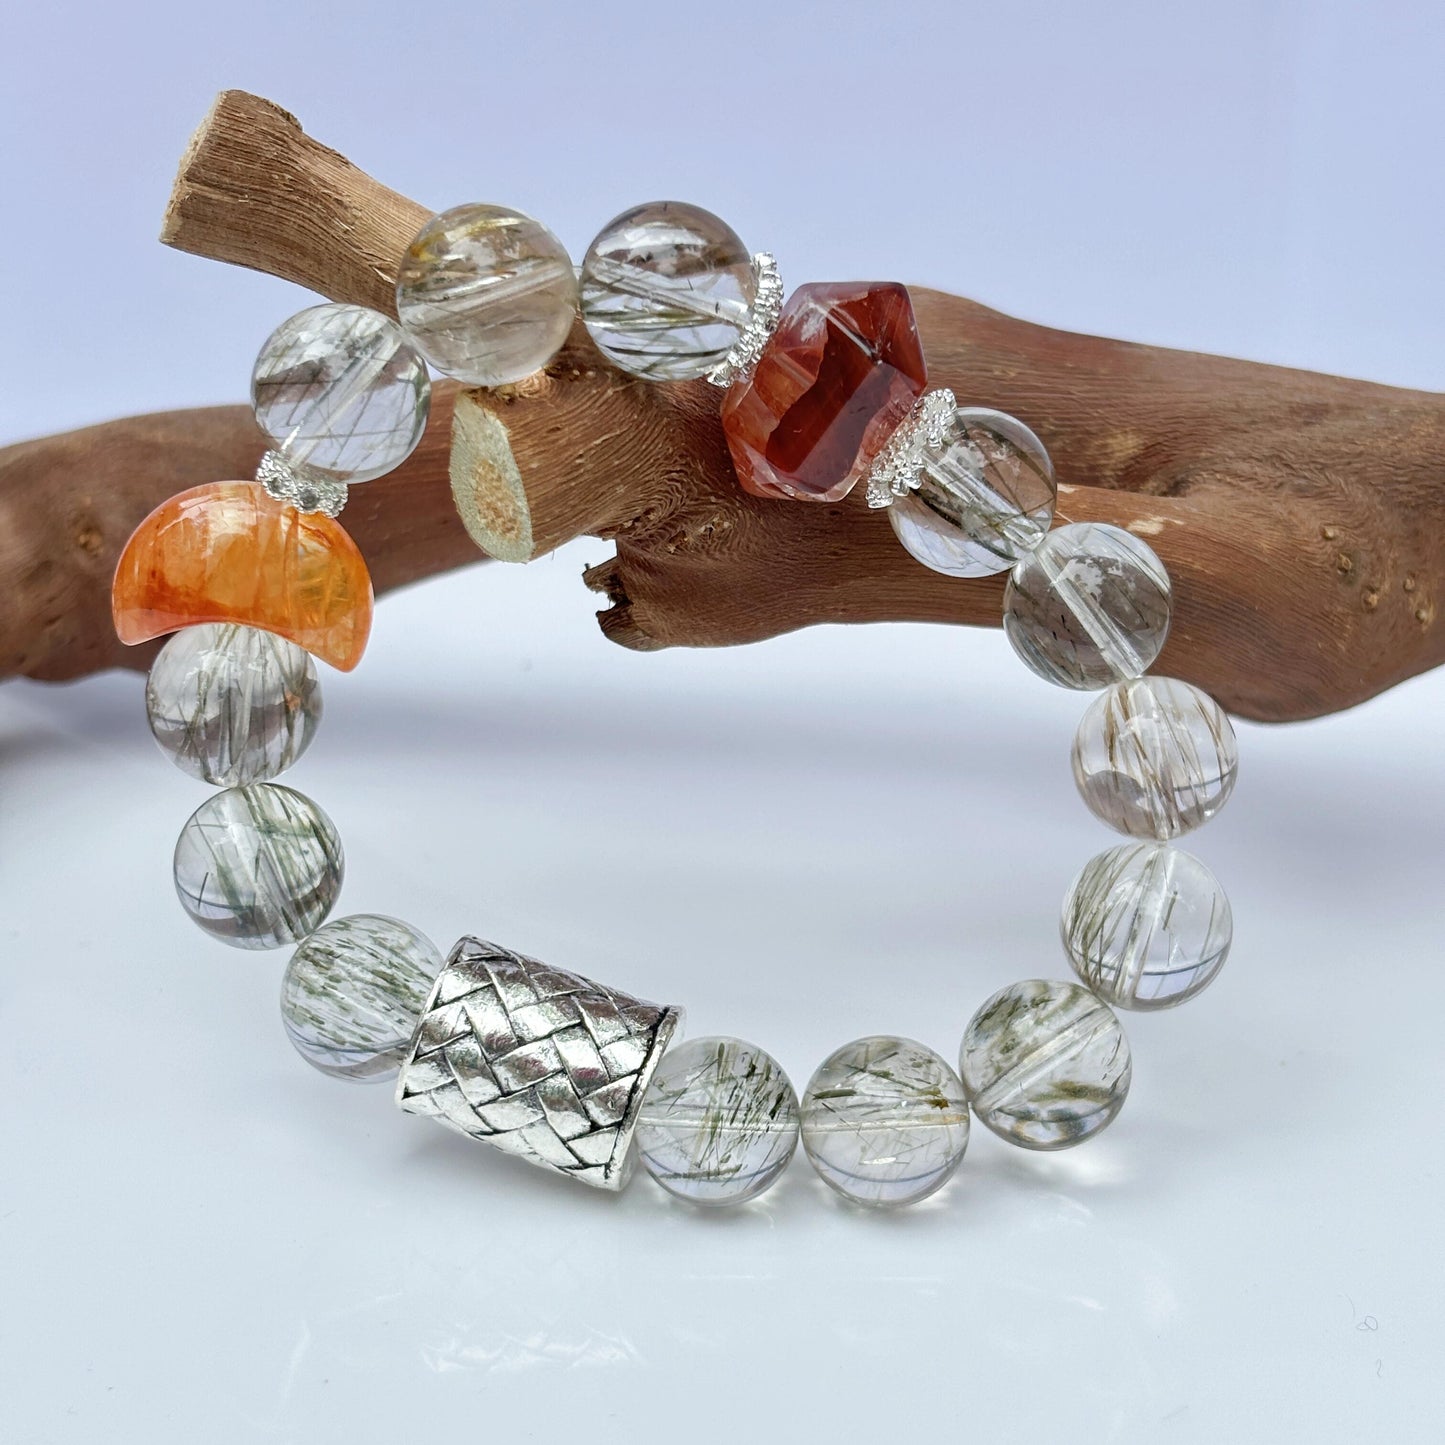 August.Peace of mind.Advanced handmade custom natural crystal bracelet